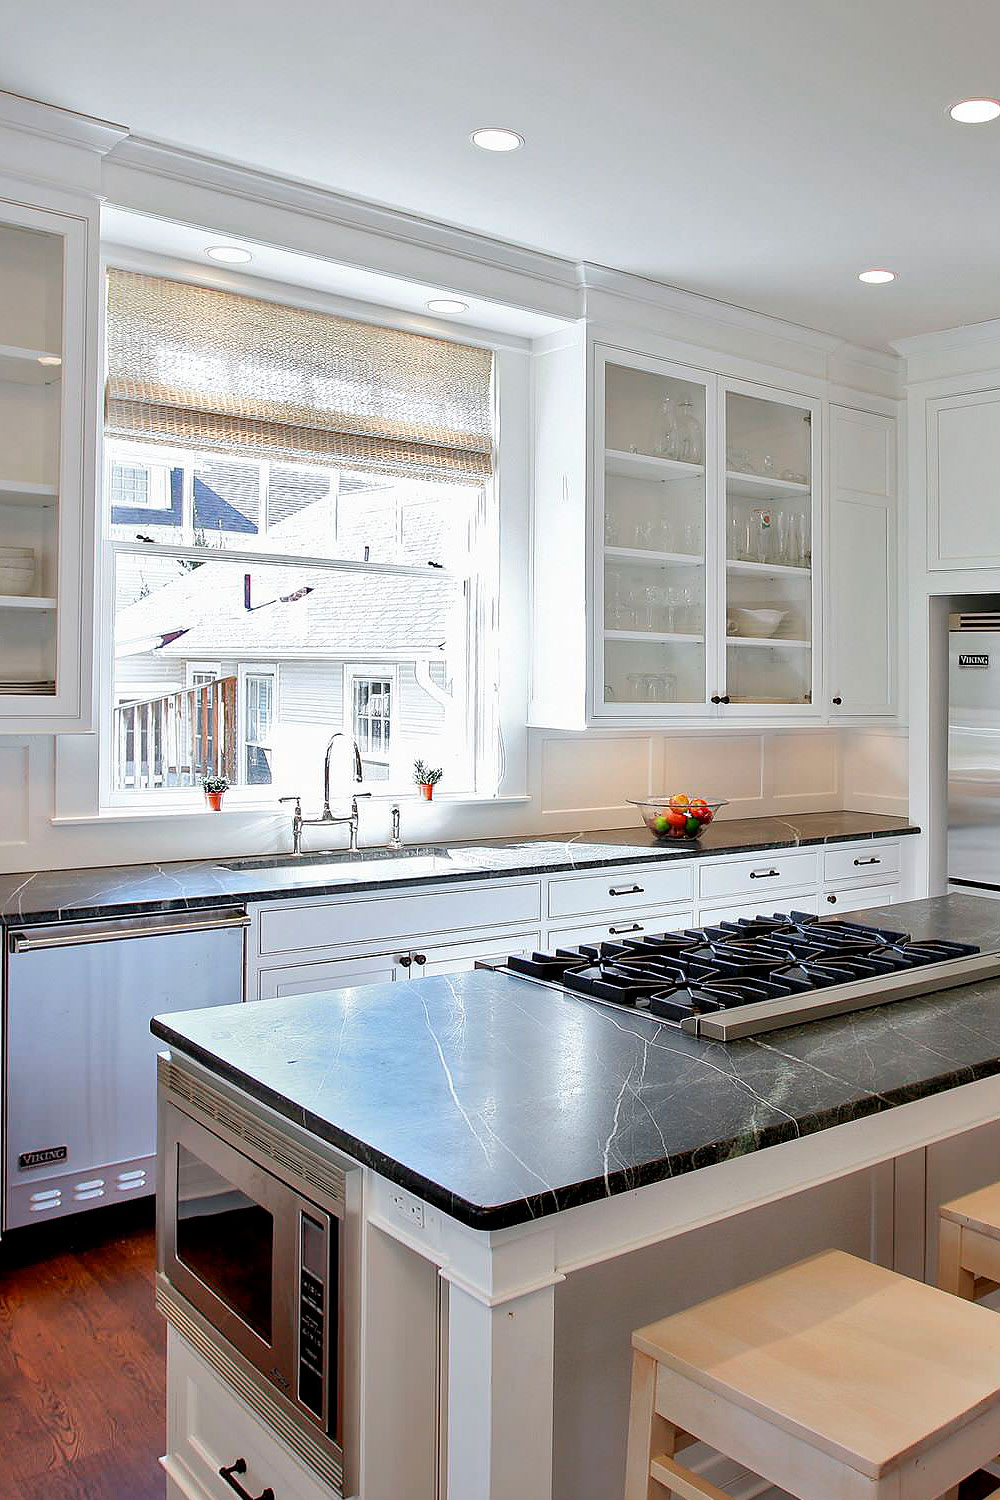 Soapstone Backsplash 75 Beautiful Kitchen With Soapstone Countertops And Blue Backsplash